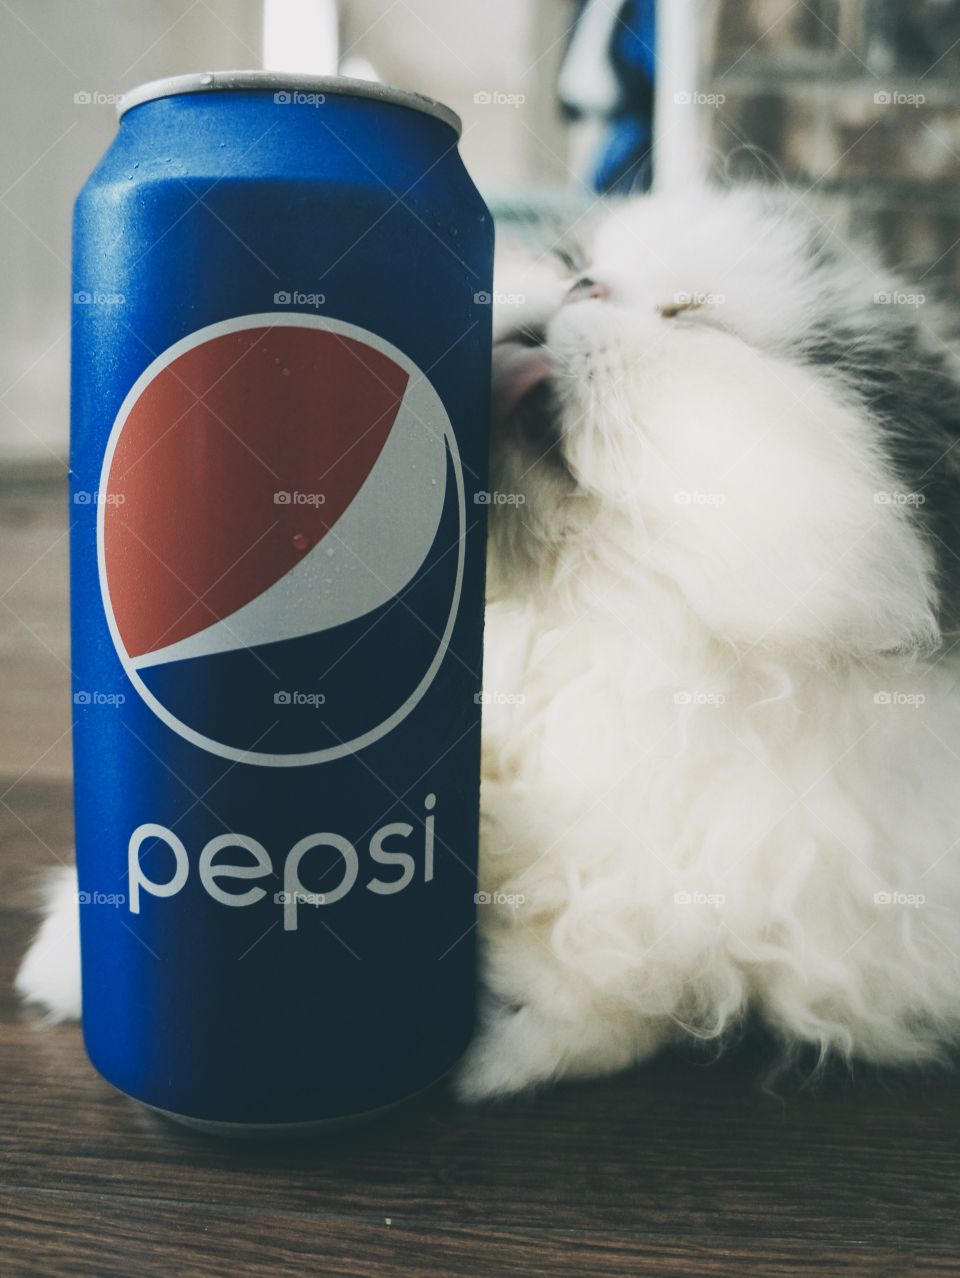 Tom-Tom Loves Pepsi